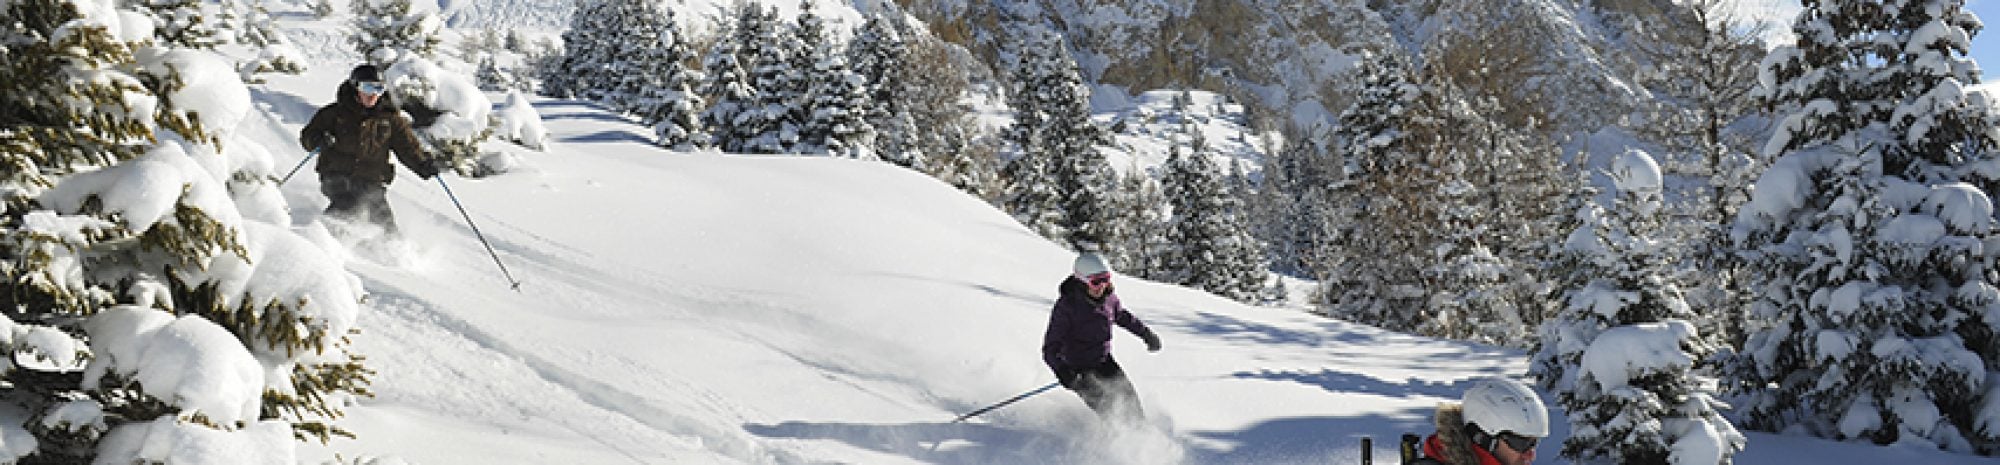 Club Med Chamonix (Alpes Françaises) : Le meilleur voyage de ski à ce jour !